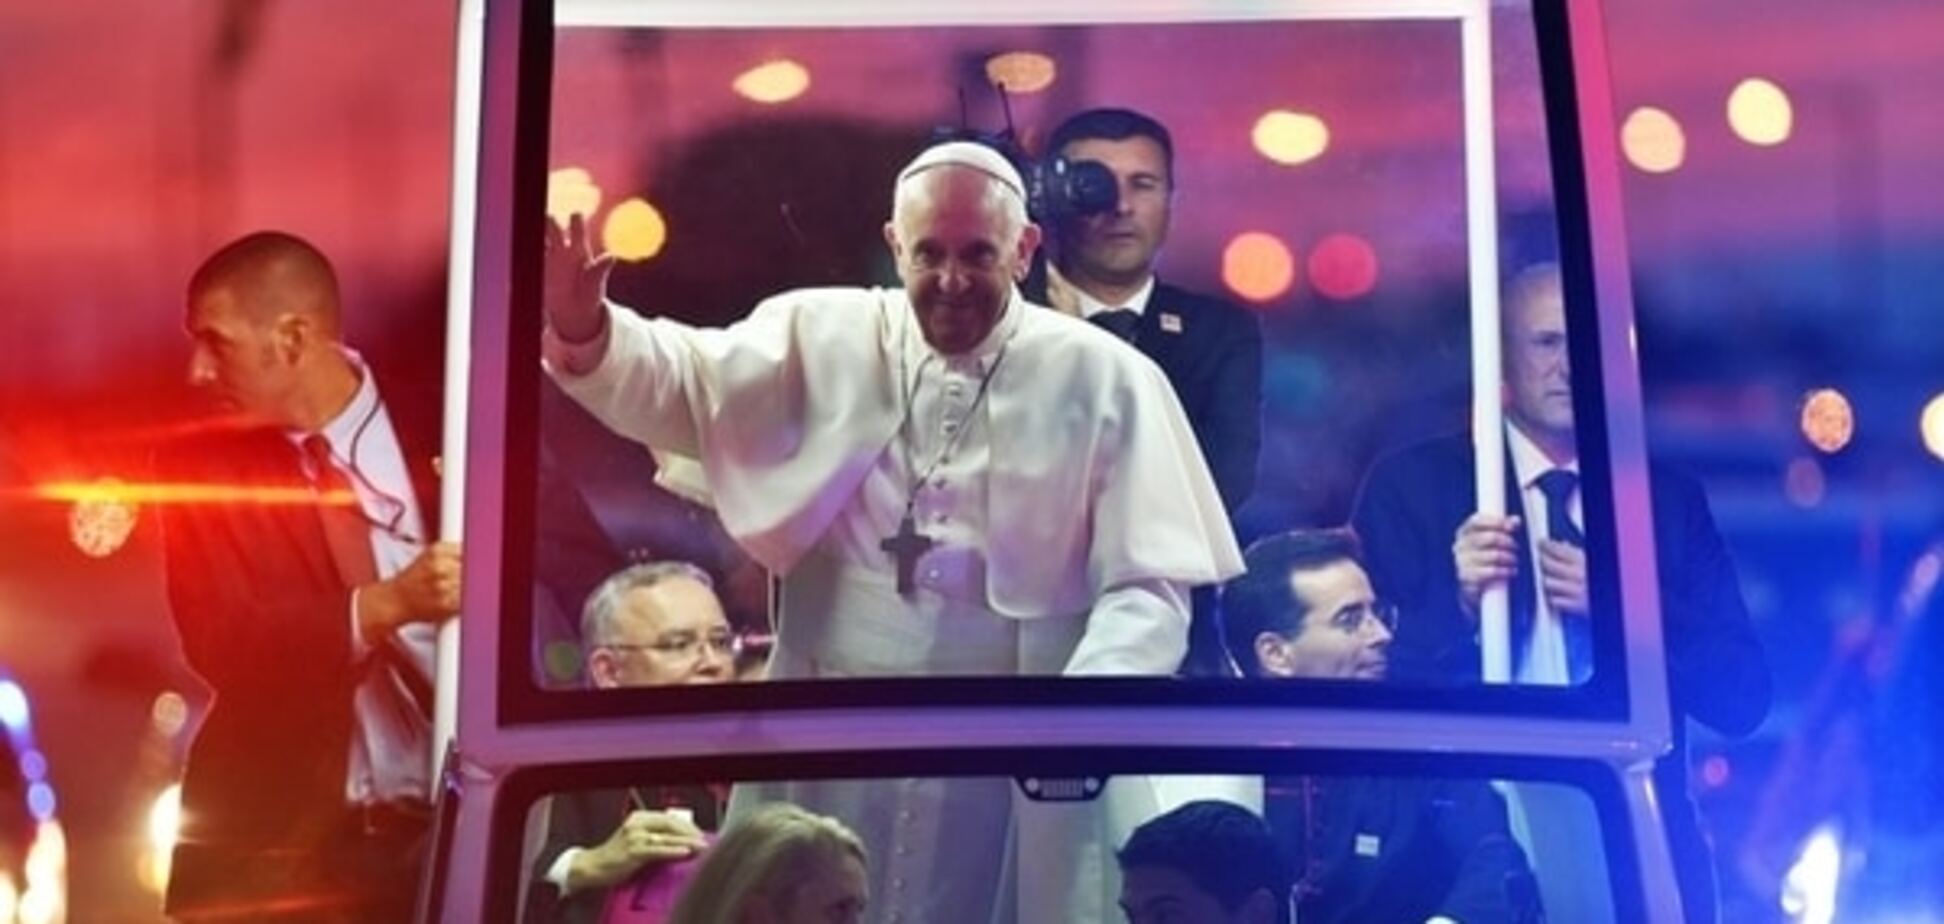 ЗМІ повідомили про недугу у Папи Франциска